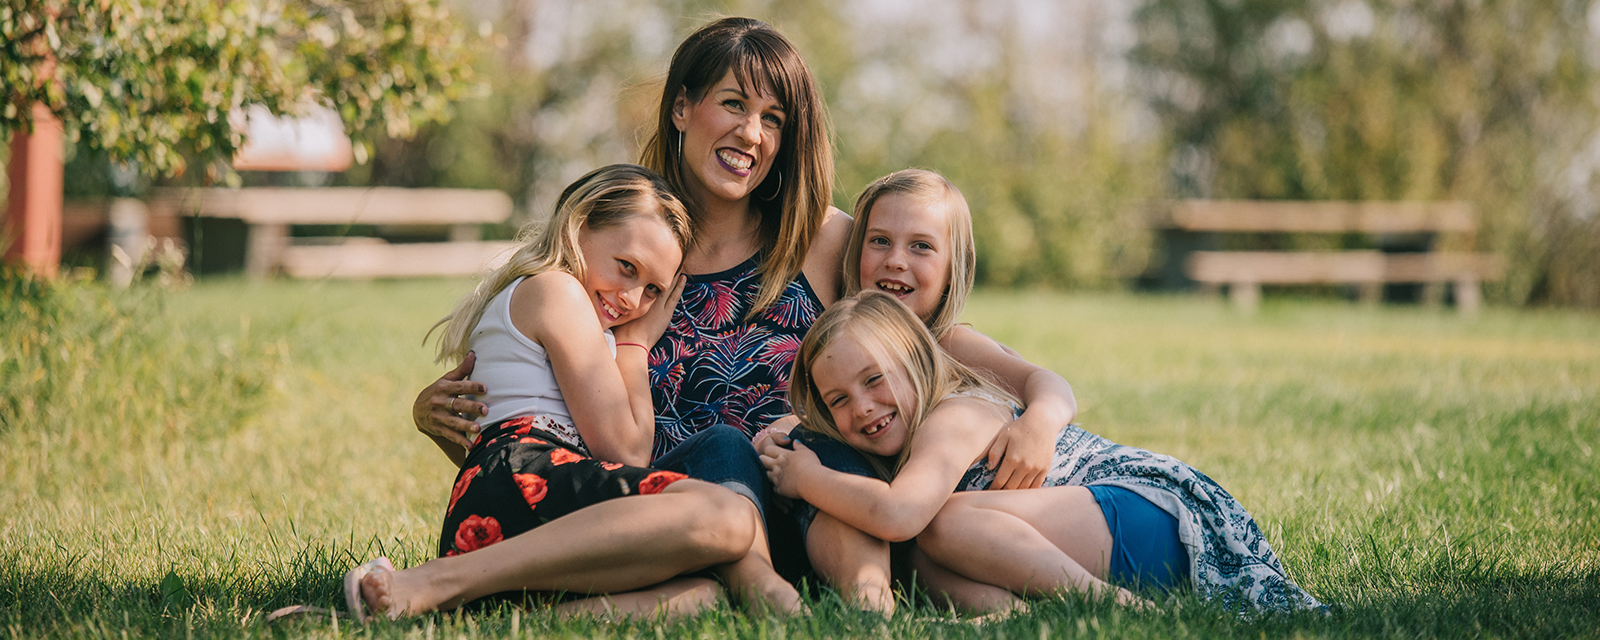 Eine sitzende Mutter umarmt ihre drei sitzende Töchter